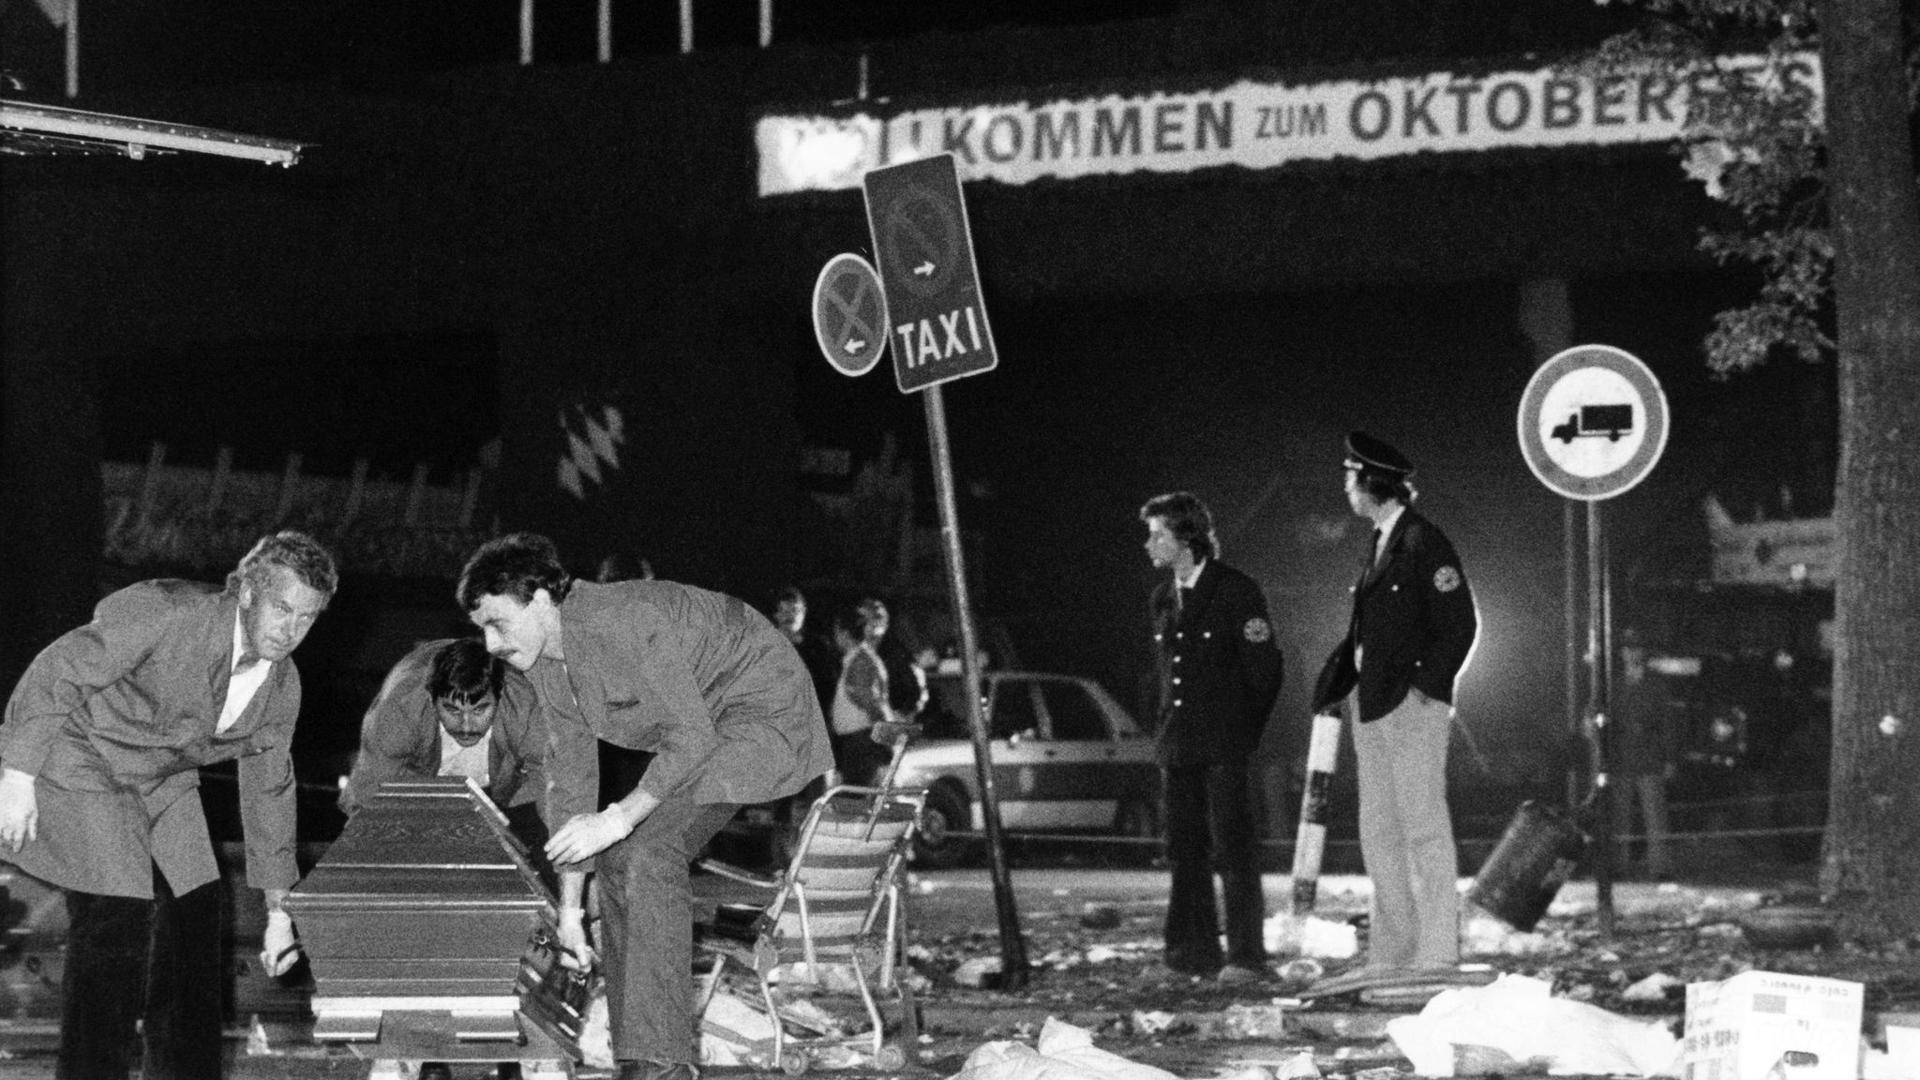 Nach dem Anchlag am 26. September 1980 wird ein Sarg vom verwüsteten Tatort auf dem Oktoberfest getragen.